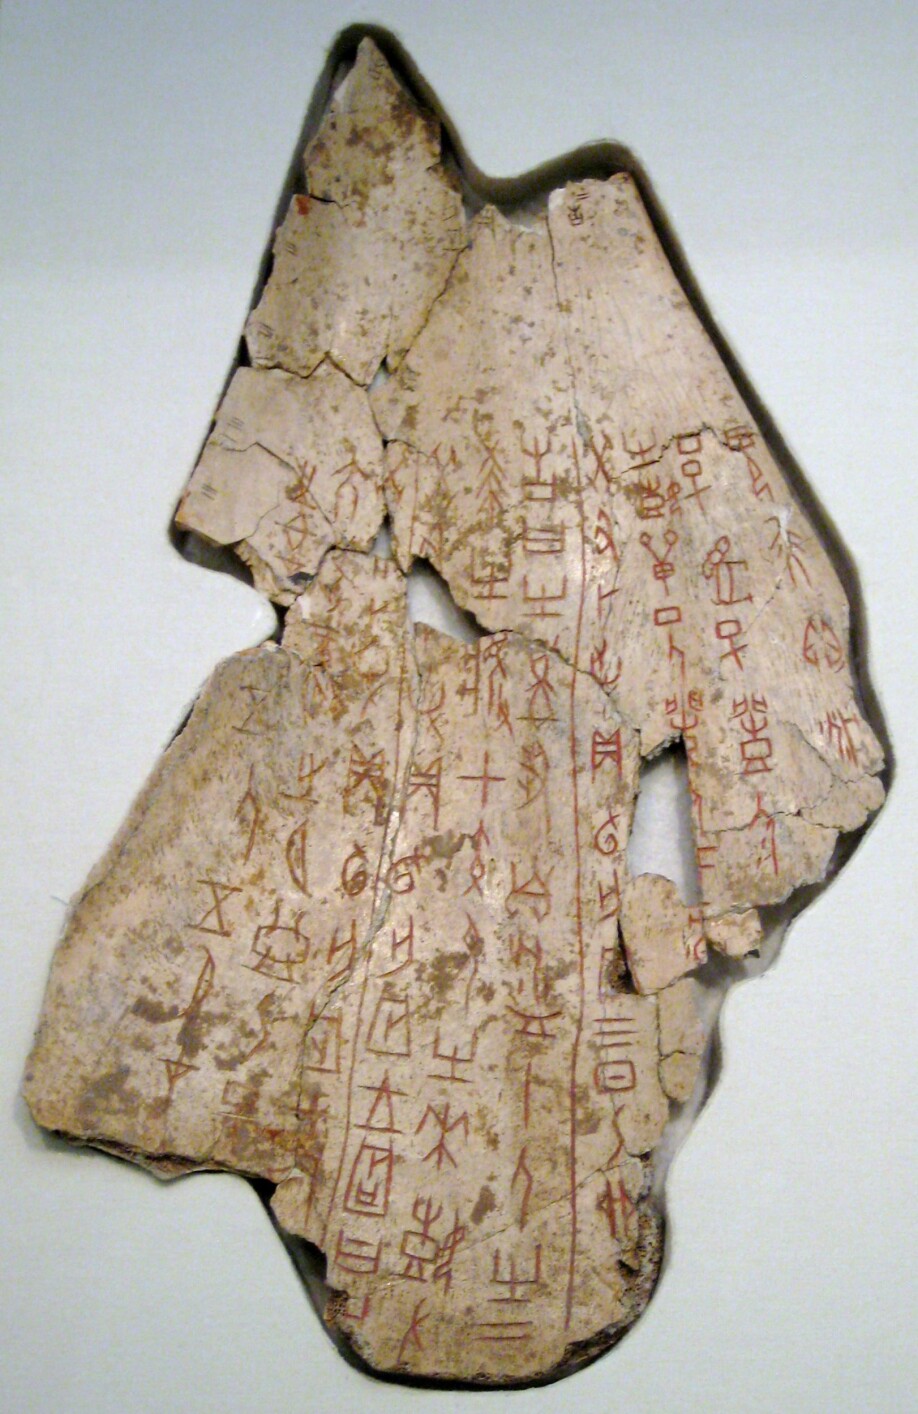 Det tidligste beviset på det kinesiske skriftsystemet er skåret inn i skulderbladet til en okse. Det er et såkalt orakelbein, som man varmet opp til det oppsto sprekker som man brukte til å forutsi framtiden – som var styrt av guder og forfedrenes ånd.